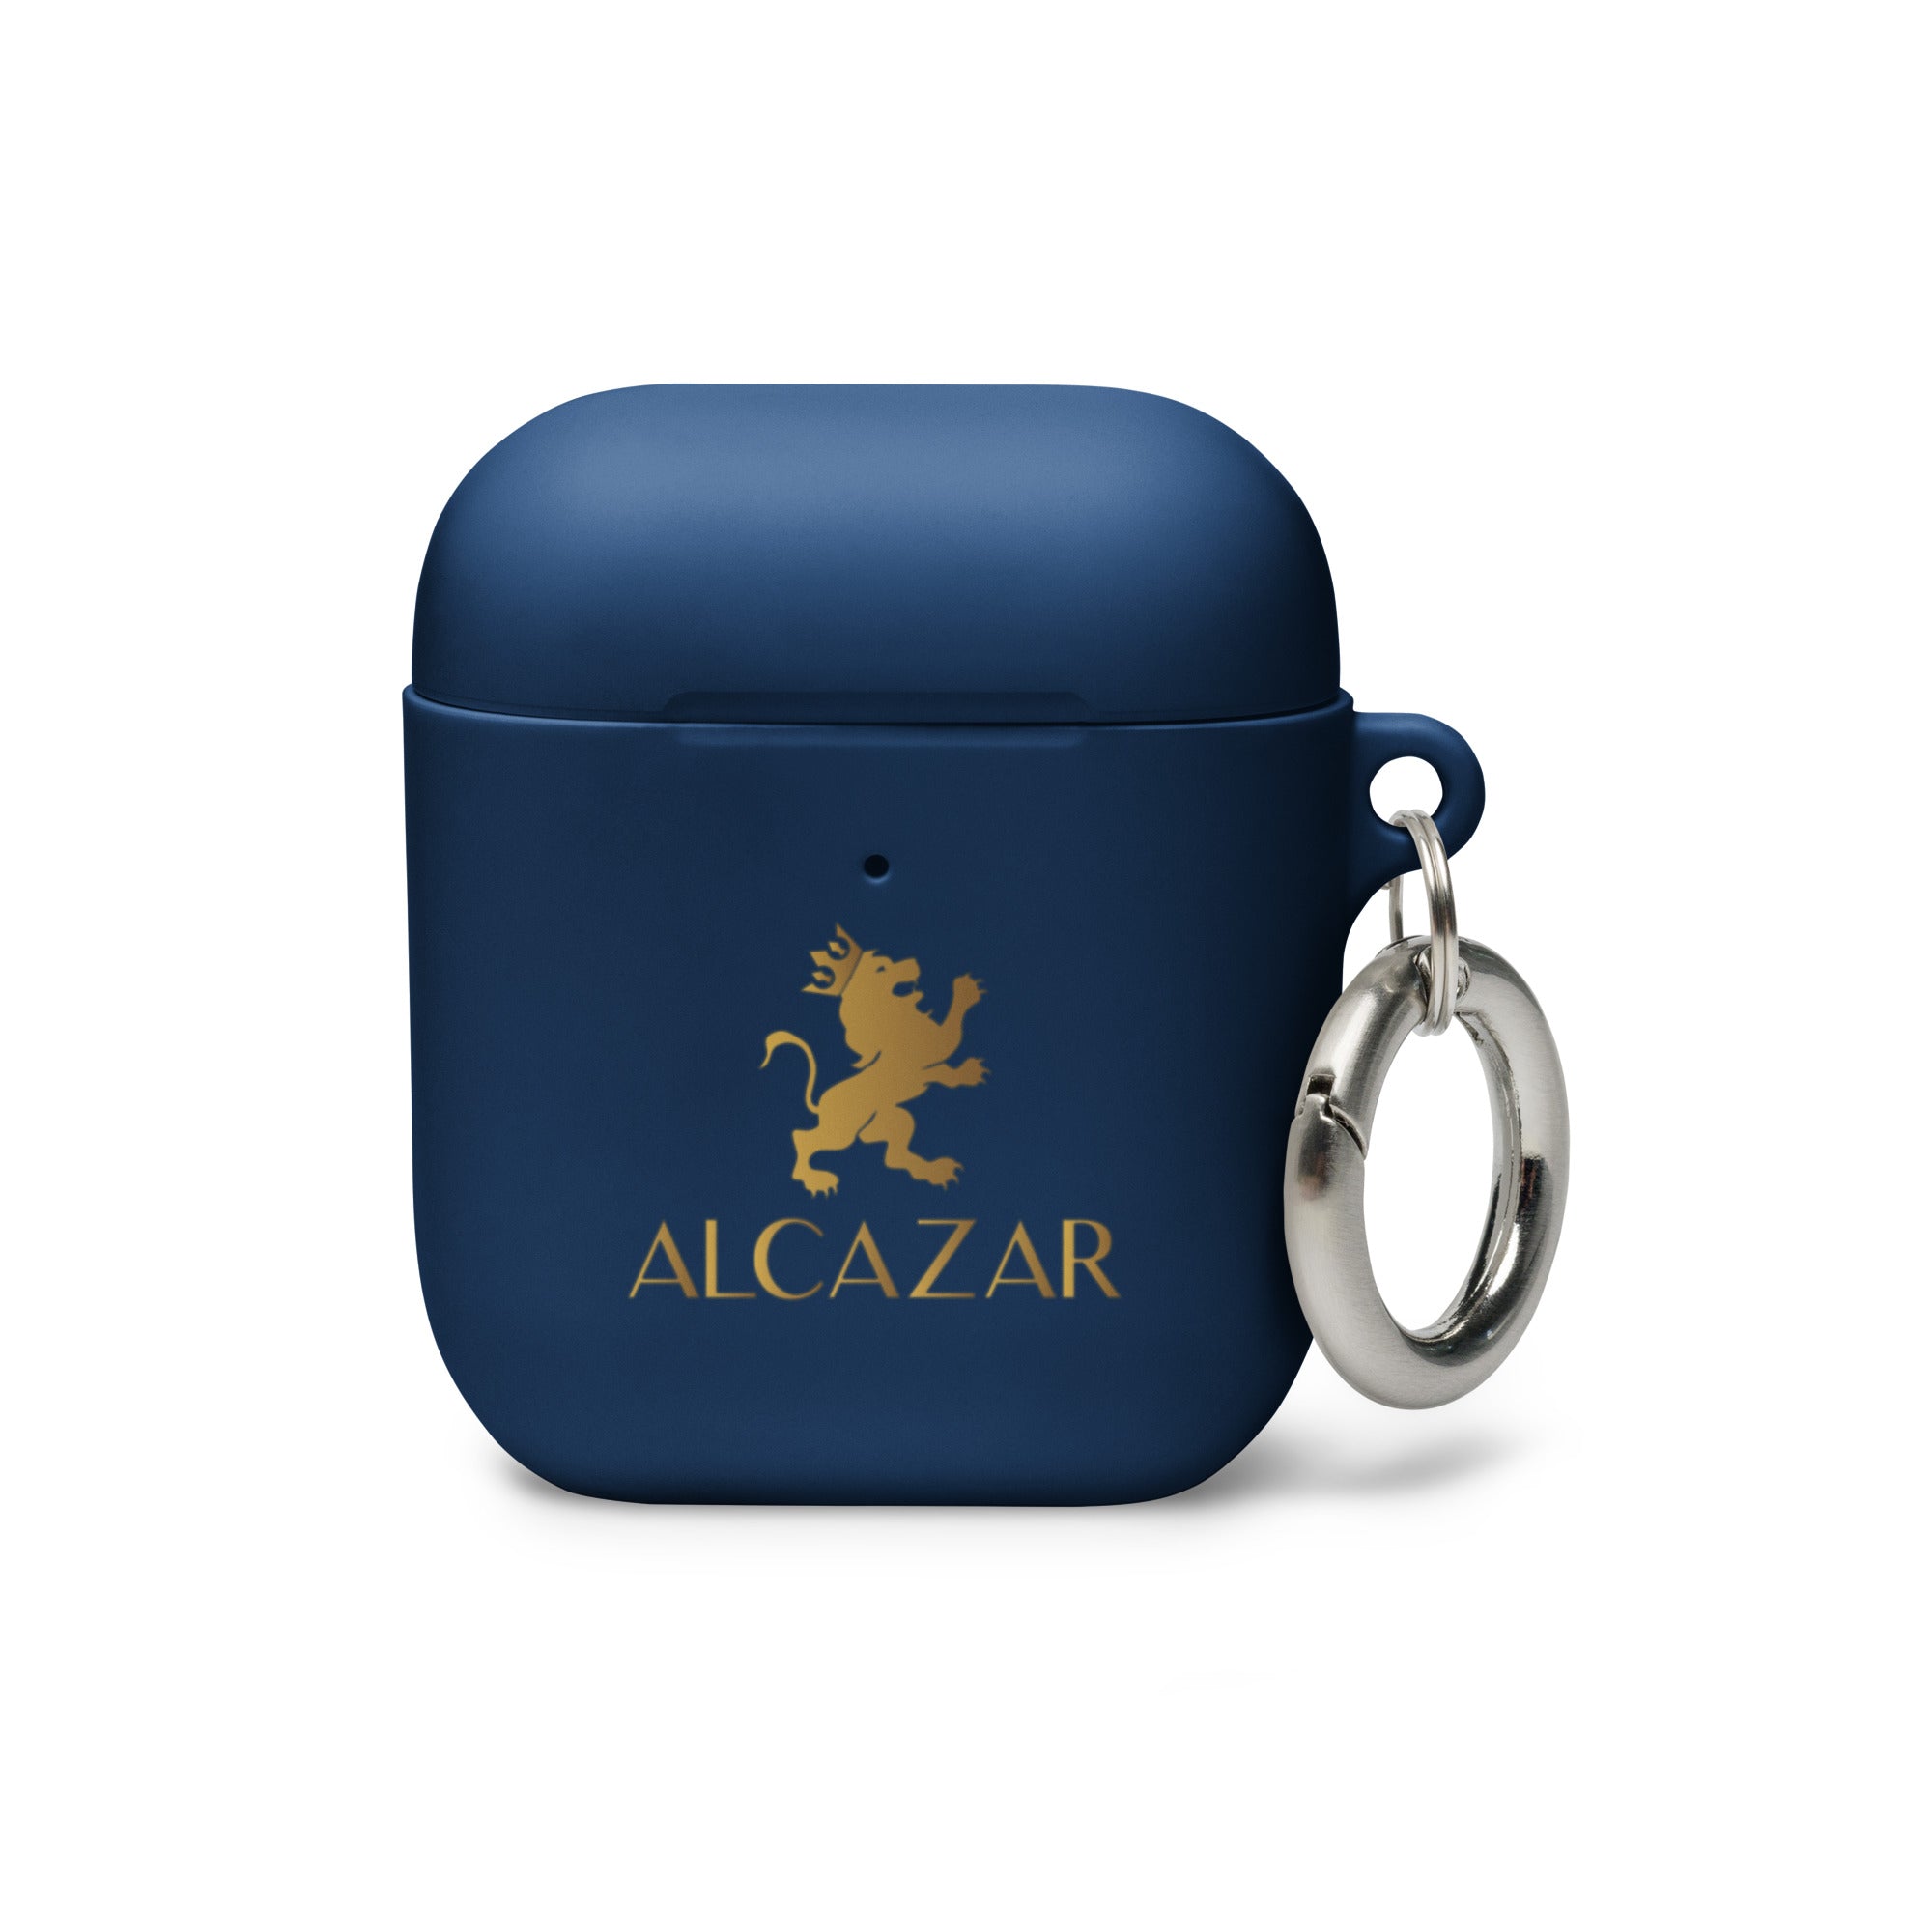 Alcazar AirPods case